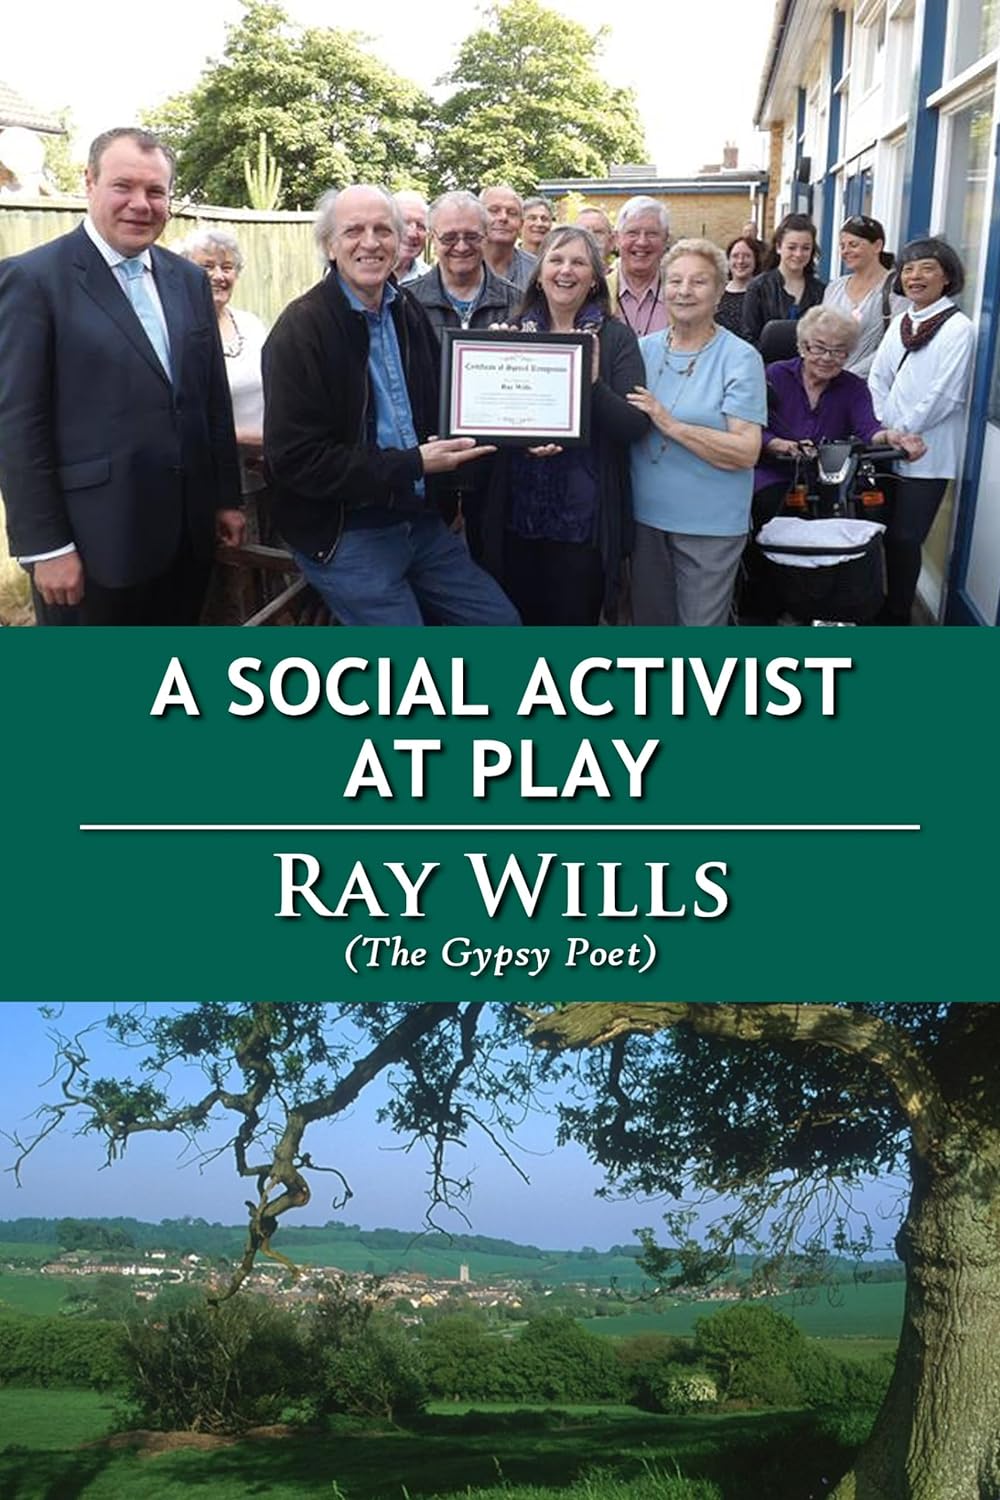 A Social Activists at Play